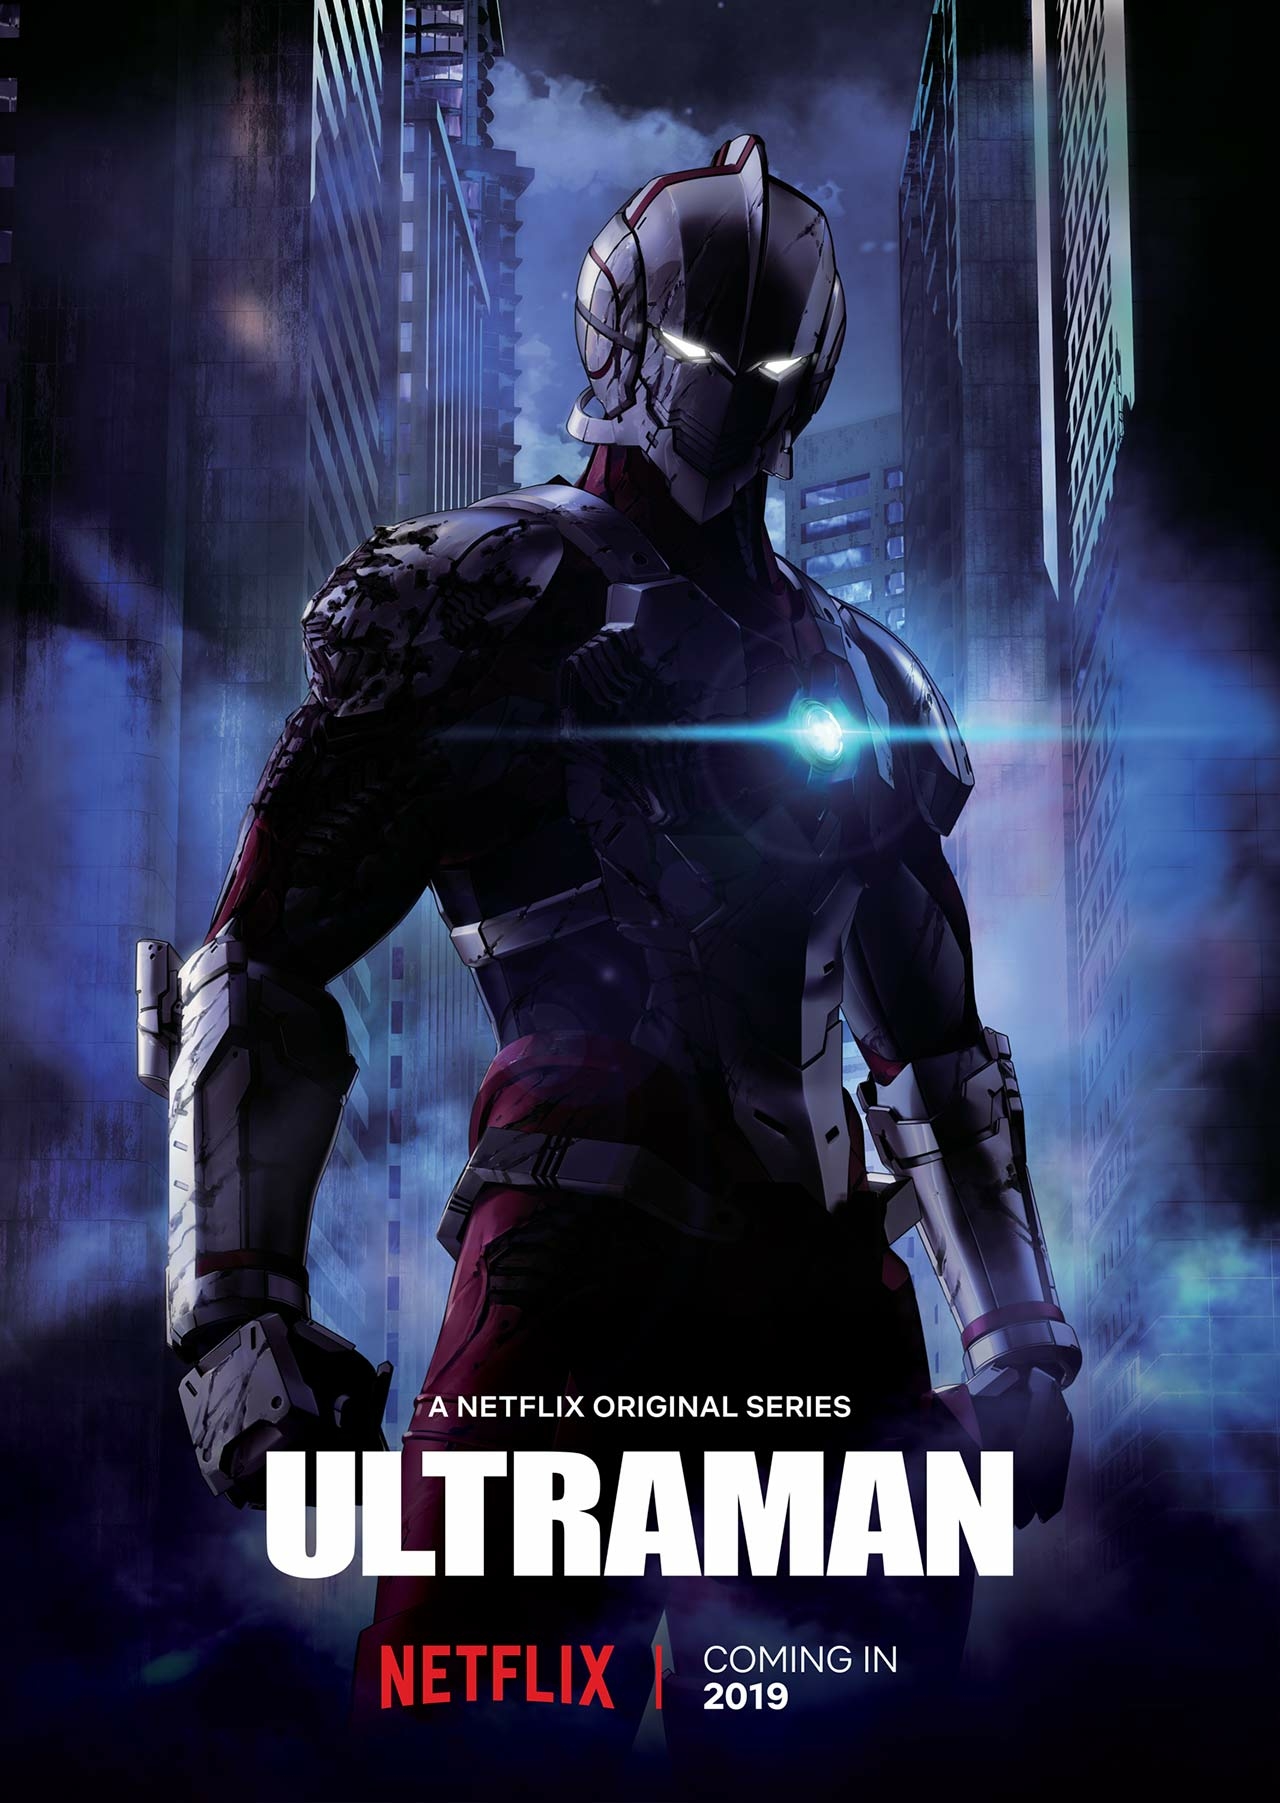 Netflix’s Ultraman movie looks pretty cool